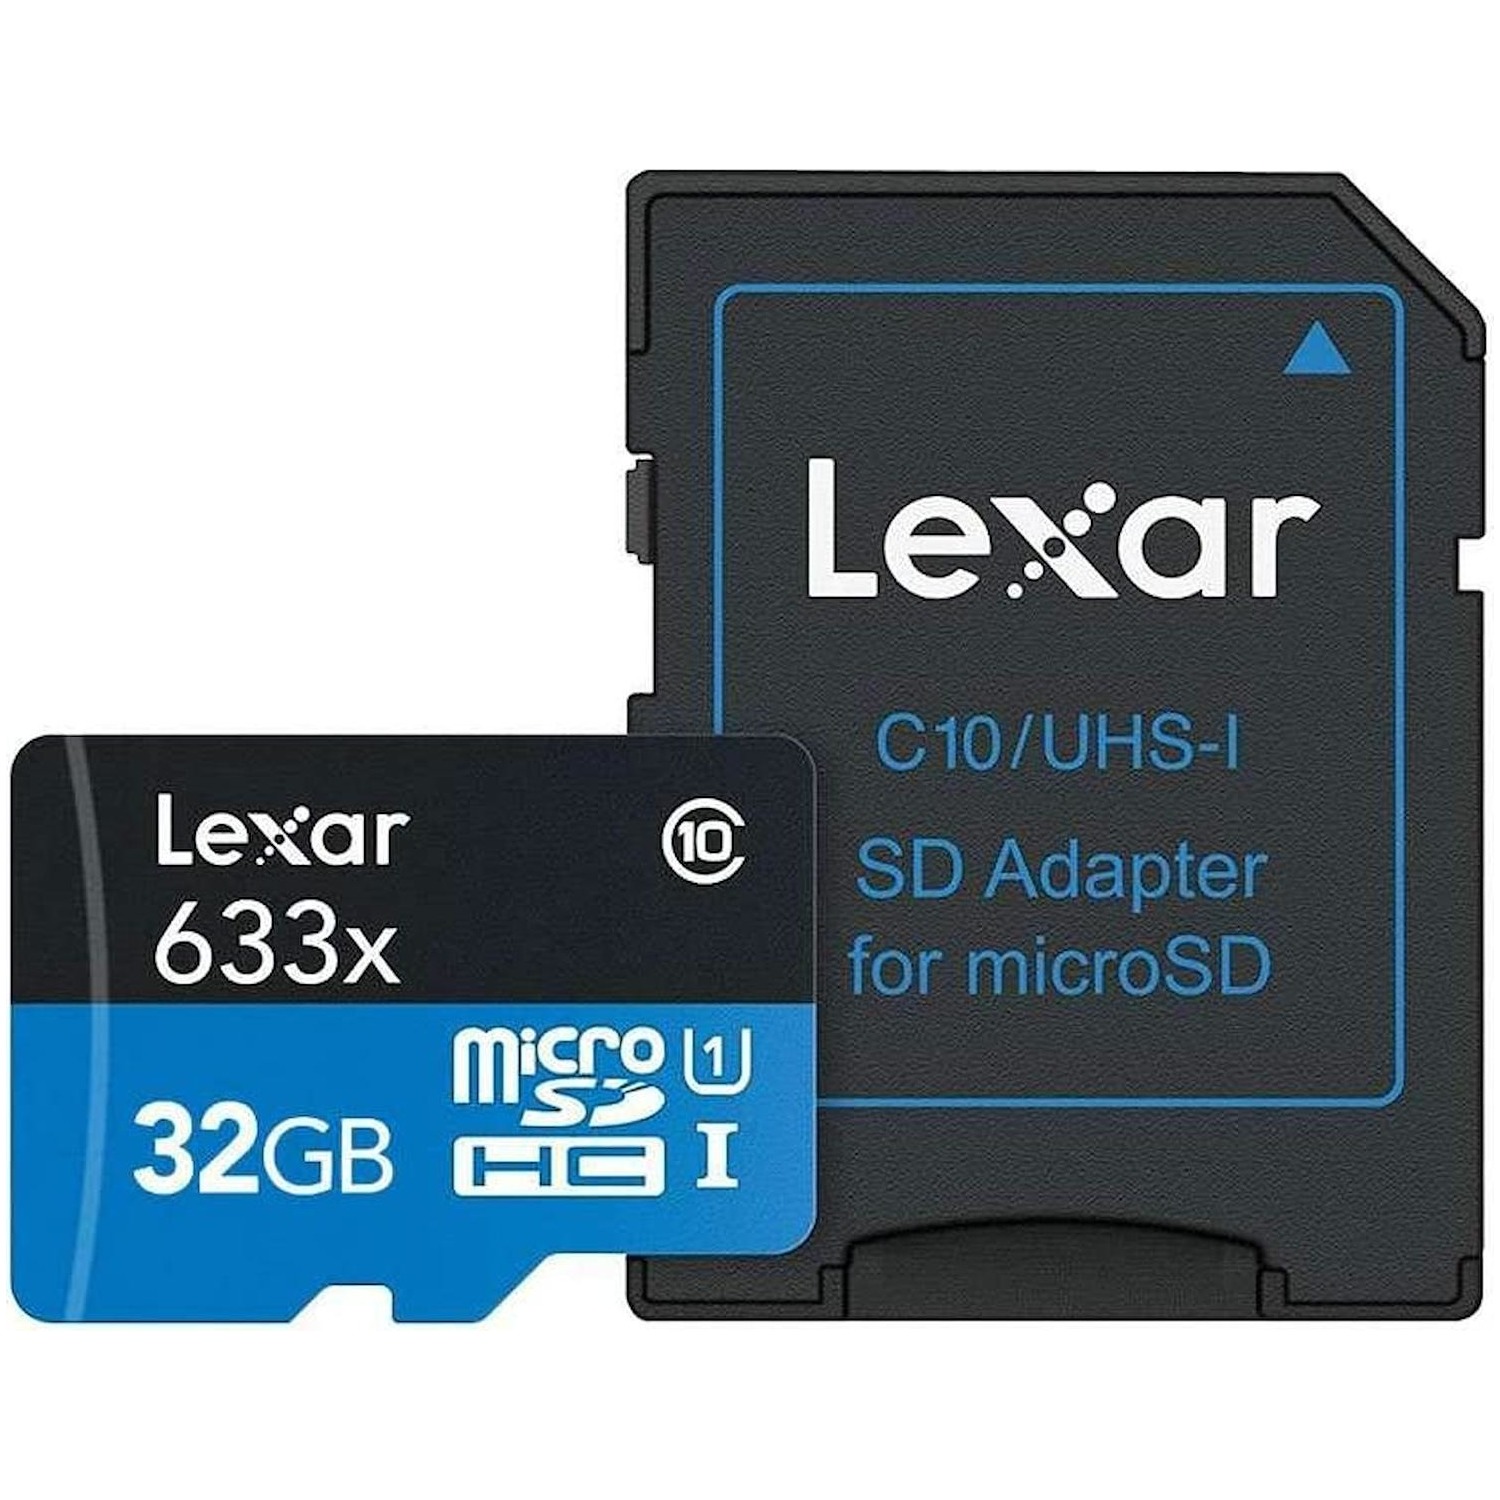 Immagine per MicroSD Lexar 633X 32 GB Global da DIMOStore